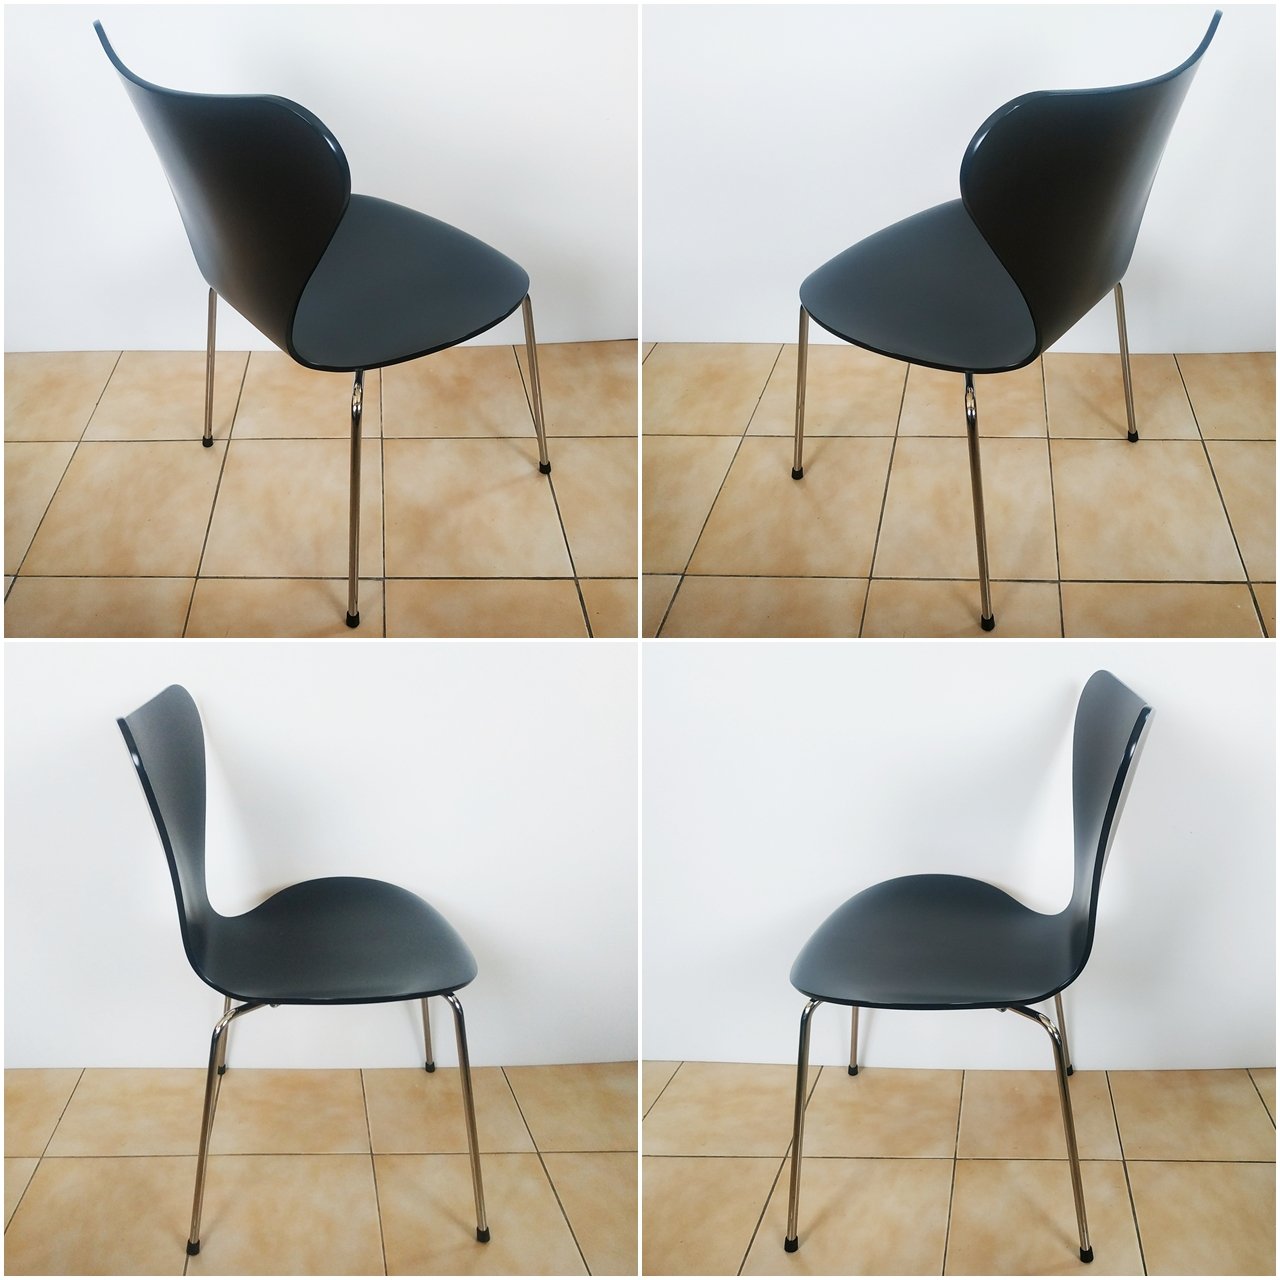 【原廠真品 中古美品 已售出 ~】丹麥 Fritz Hansen Series 7 Chair 3107 七號椅 經典收藏 美品級